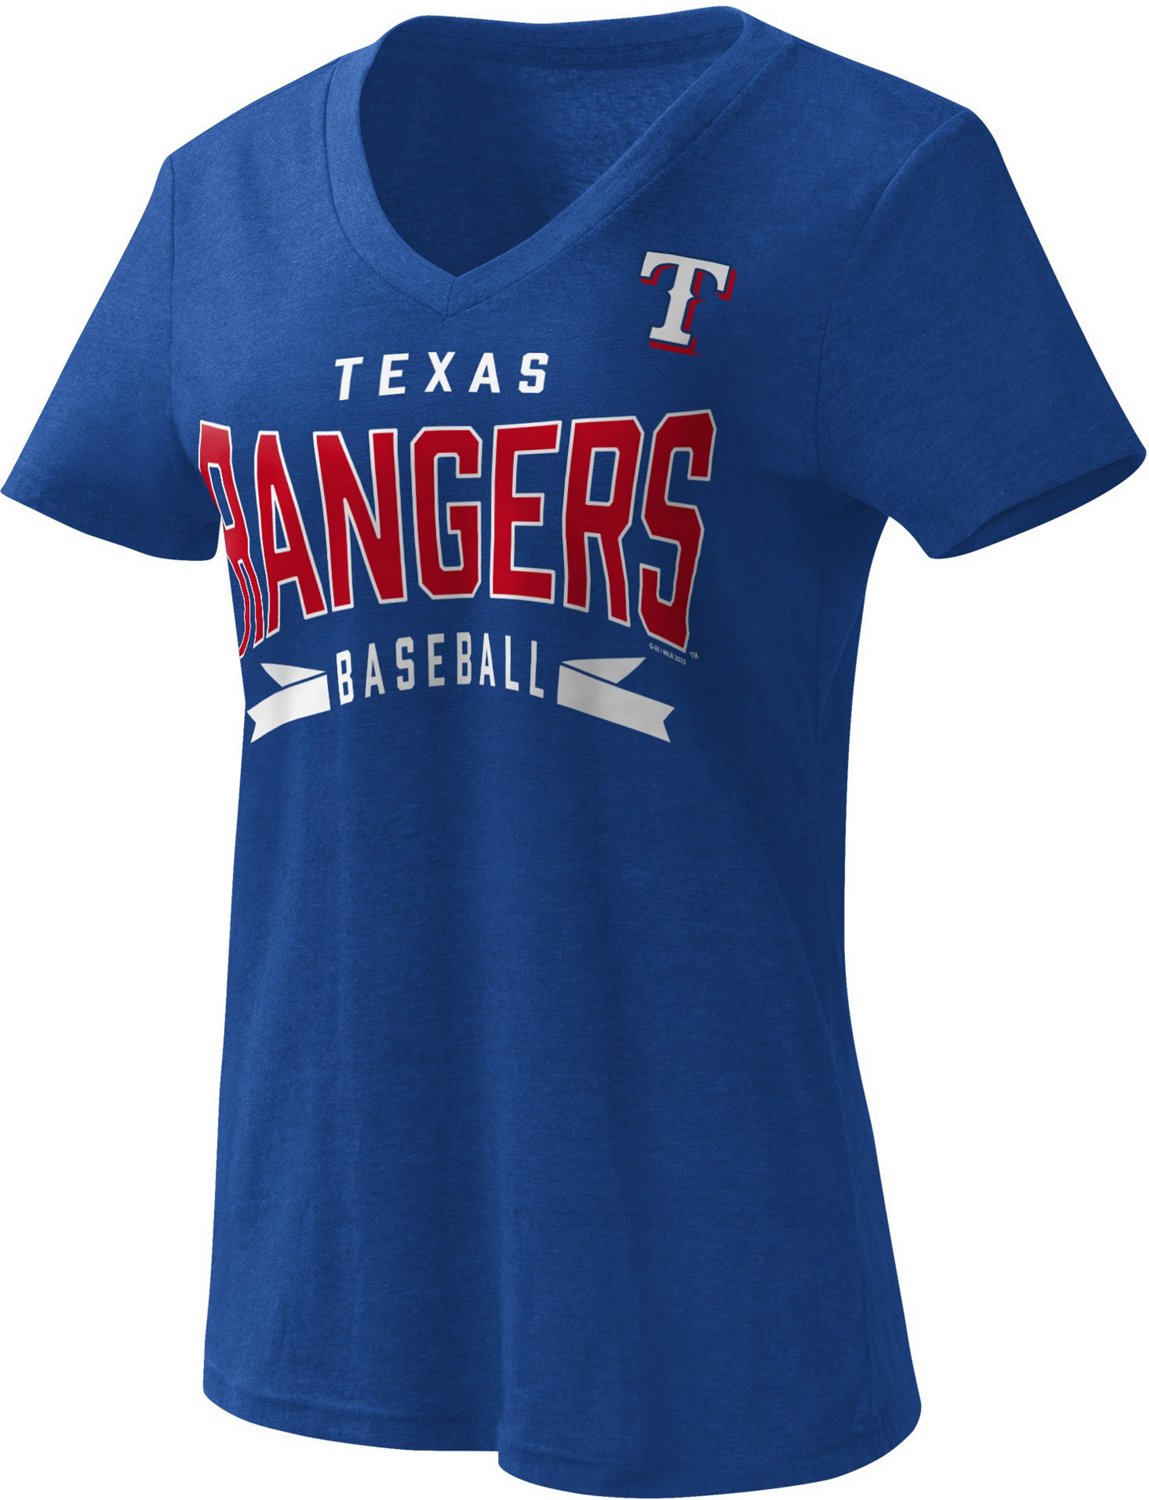 G-III For Her Women's Texas Rangers No-Hitter T-shirt